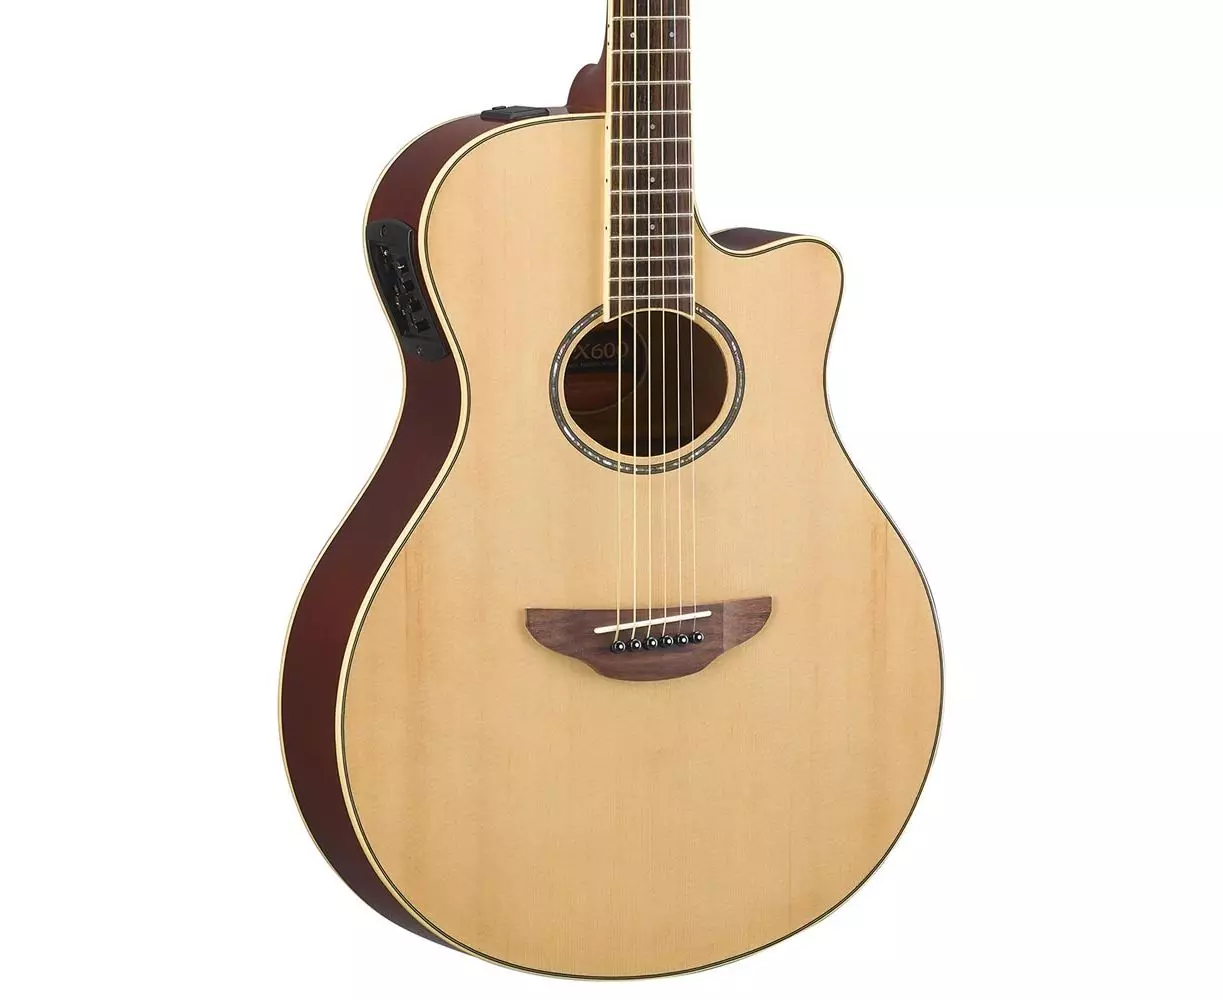 Cut китара: акустична, класическа 12-струнна и друг модел. Защо ви е нужен Разрез (Catway)? Какво е по-добре без китара силует? 26251_10